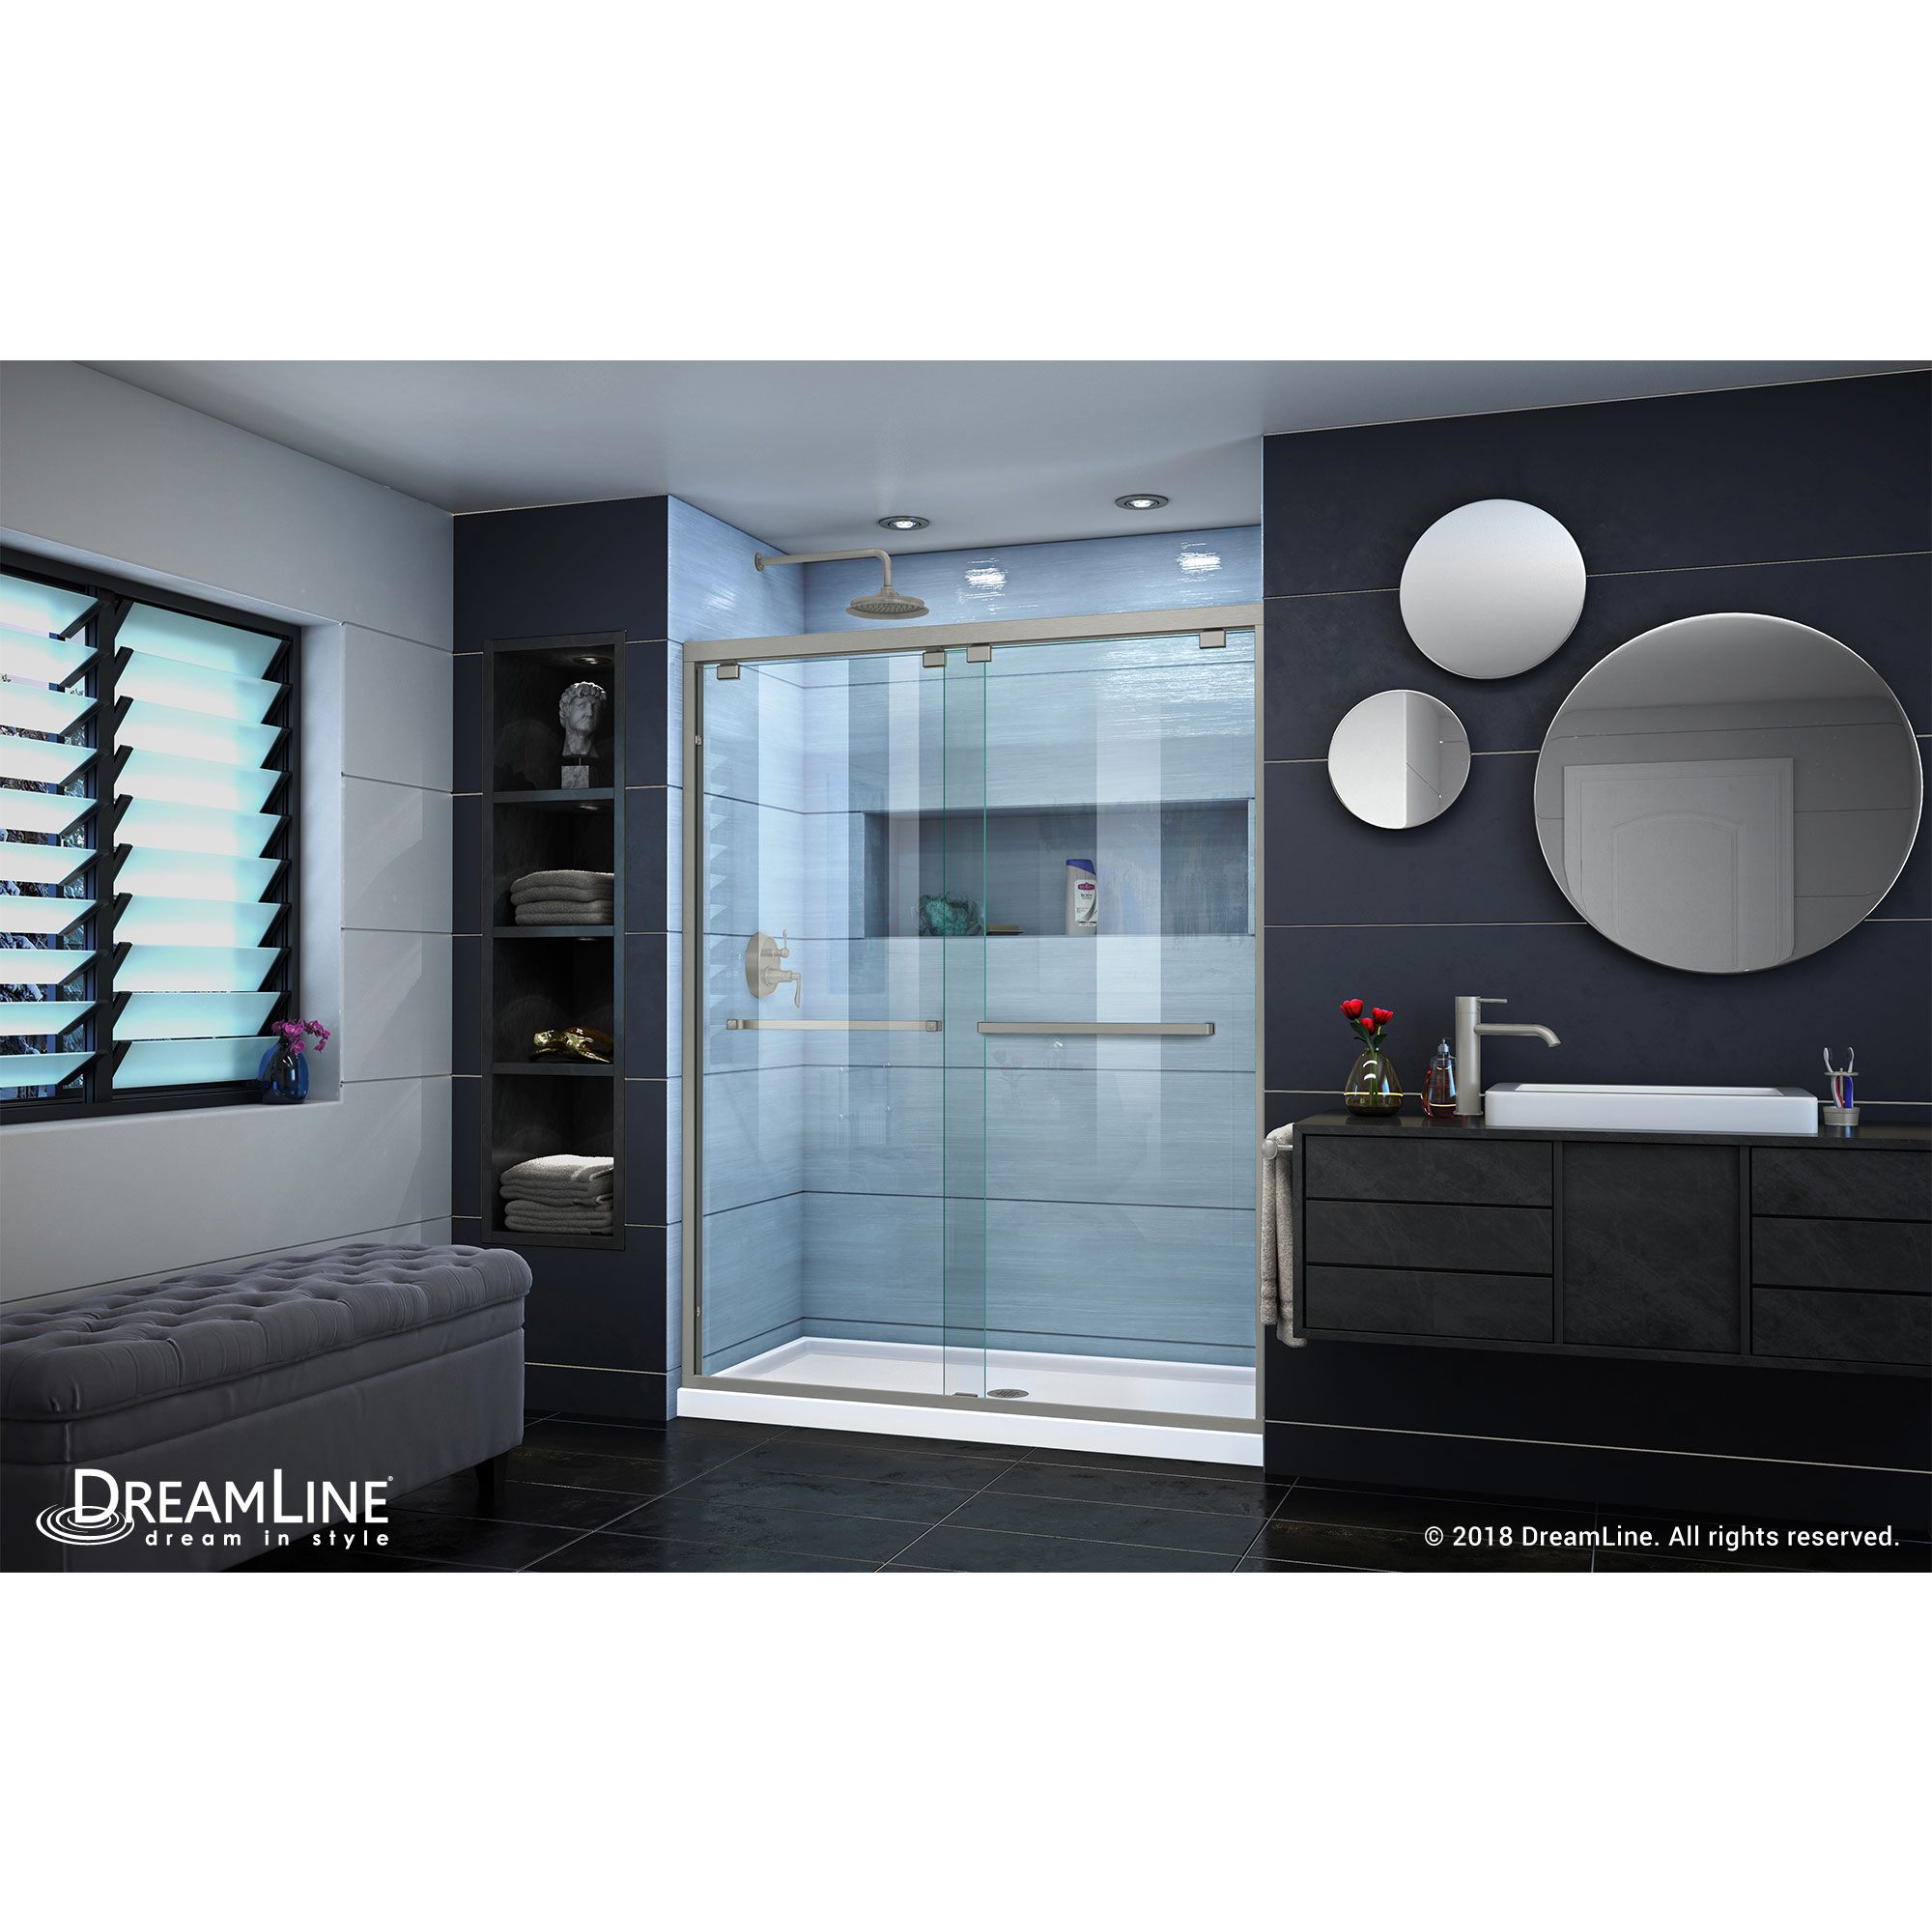 DreamLine Encore 50-54 in. W x 76 in. H Semi-Frameless Bypass Shower Door in Brushed Nickel